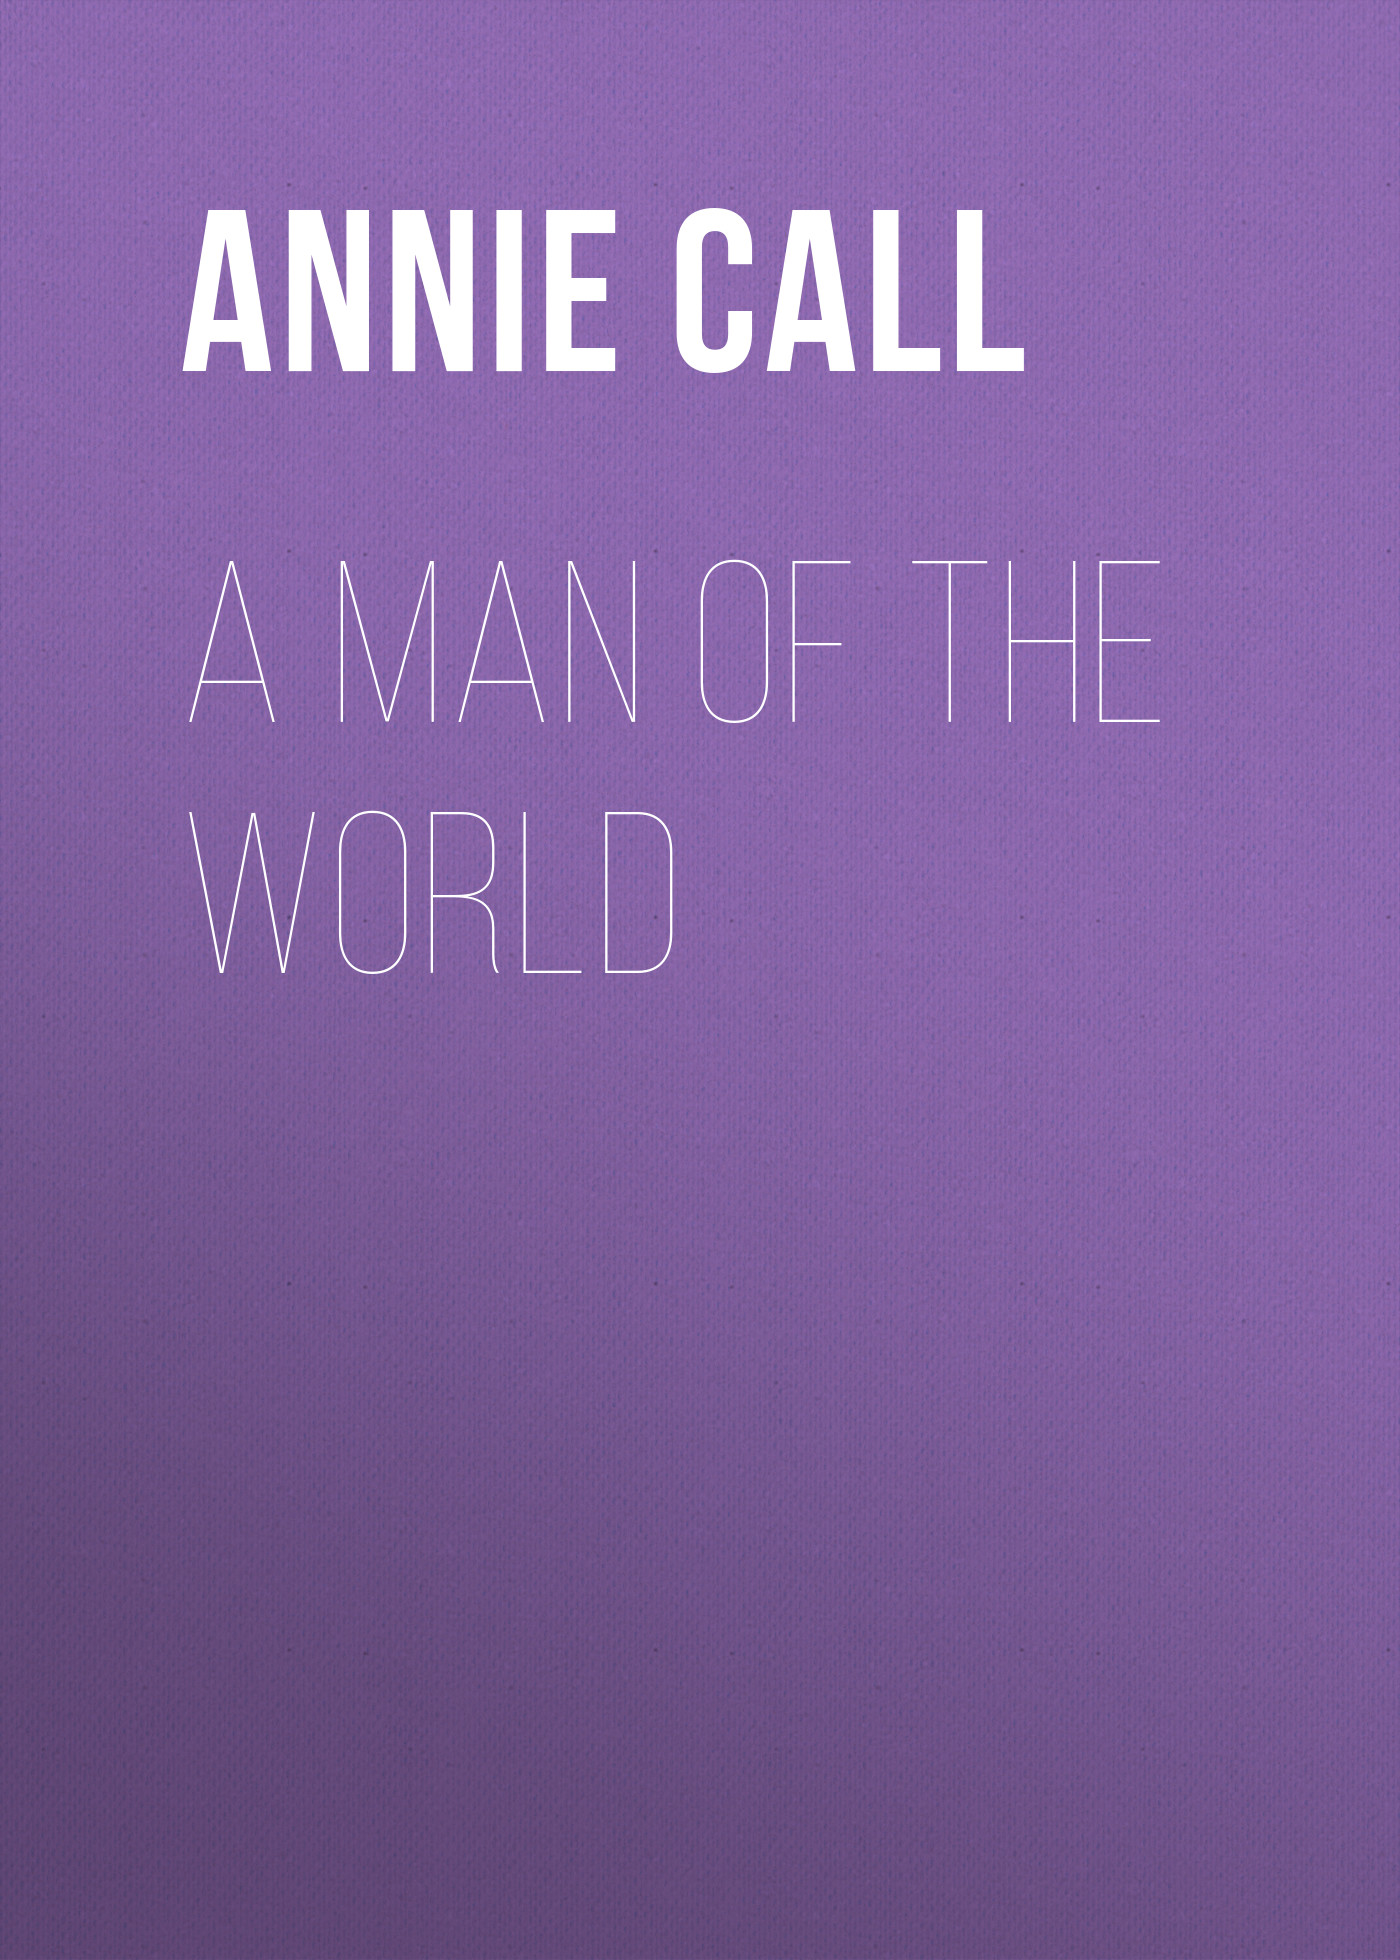 Книга A Man of the World из серии , созданная Annie Call, может относится к жанру Зарубежная старинная литература, Зарубежная классика. Стоимость электронной книги A Man of the World с идентификатором 24170812 составляет 0.90 руб.